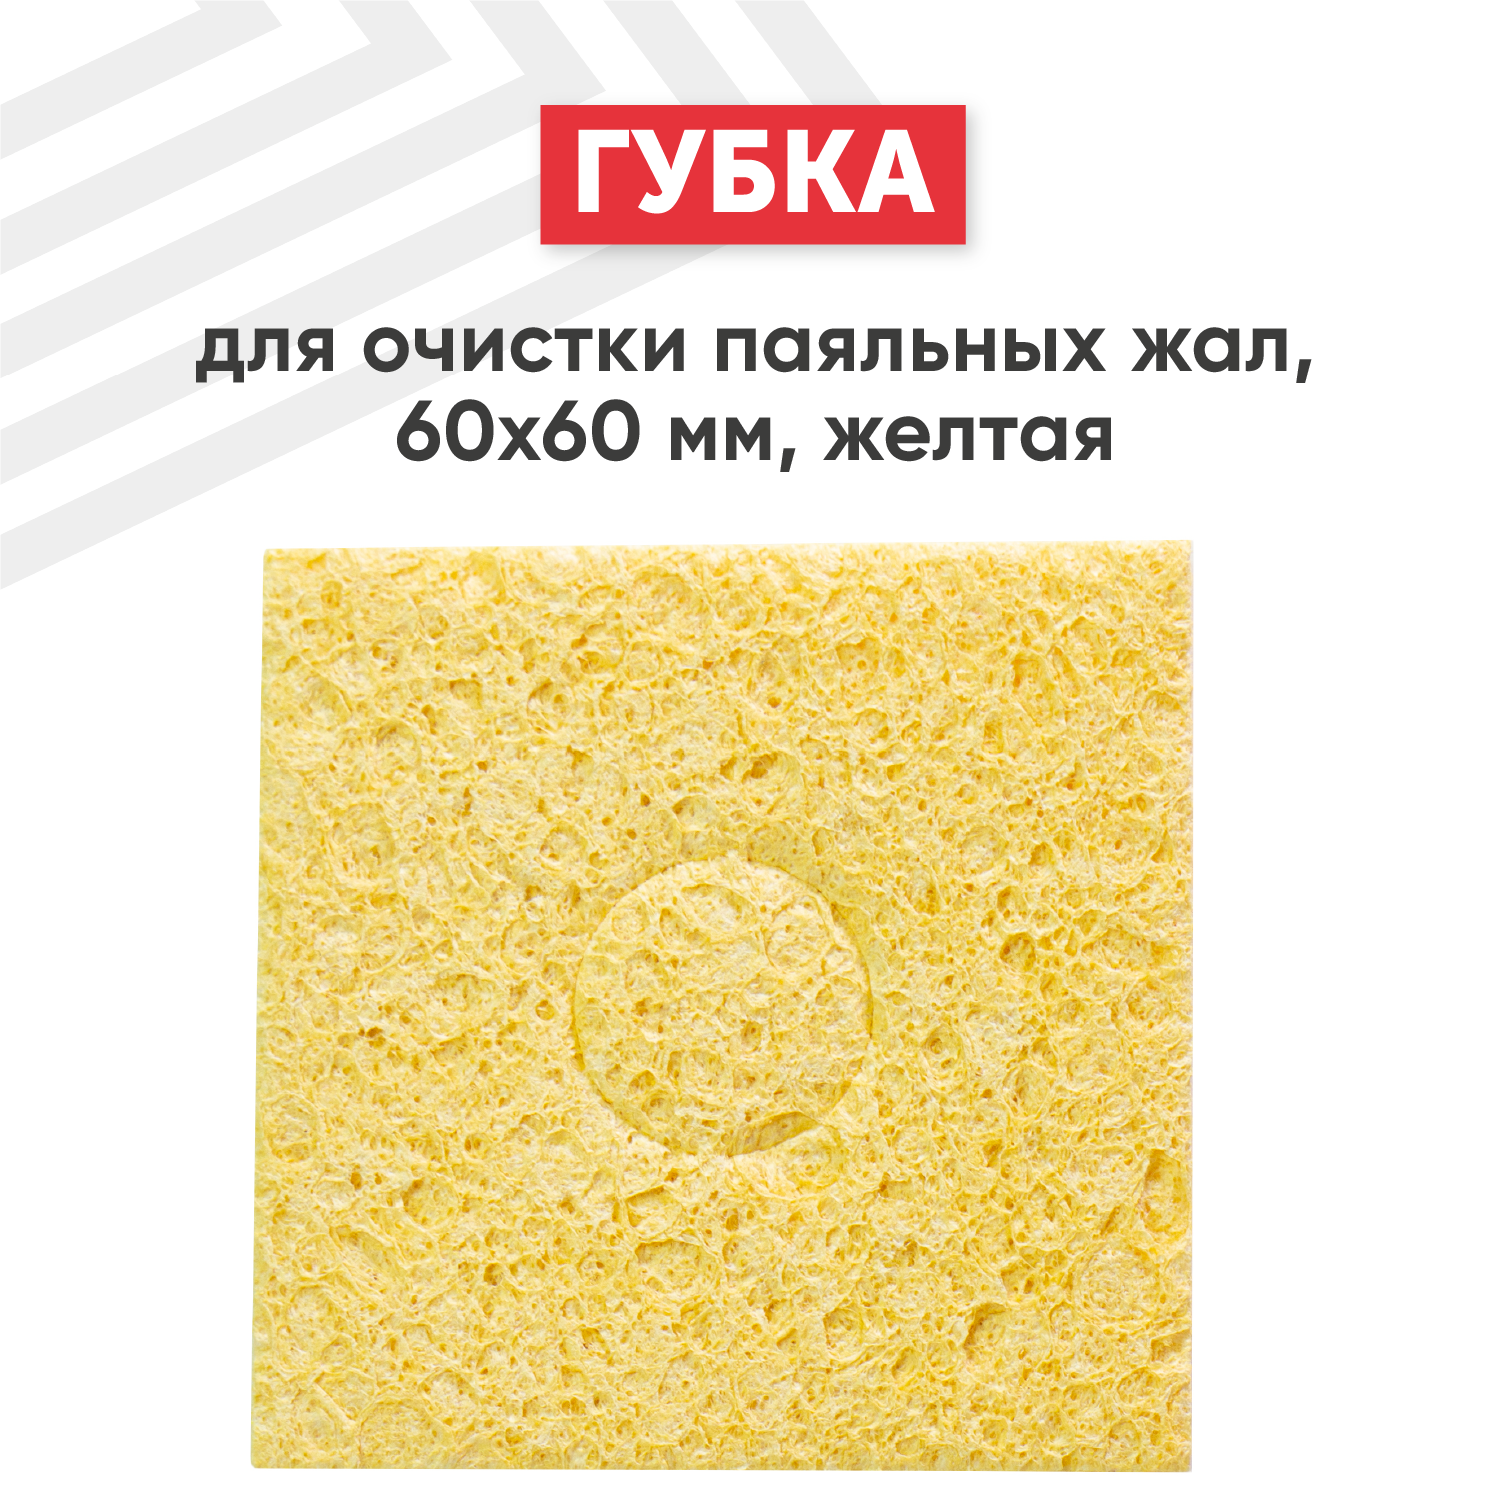 Вискозная губка для очистки паяльных жал (паяльников) от припоя 60х60 мм желтая